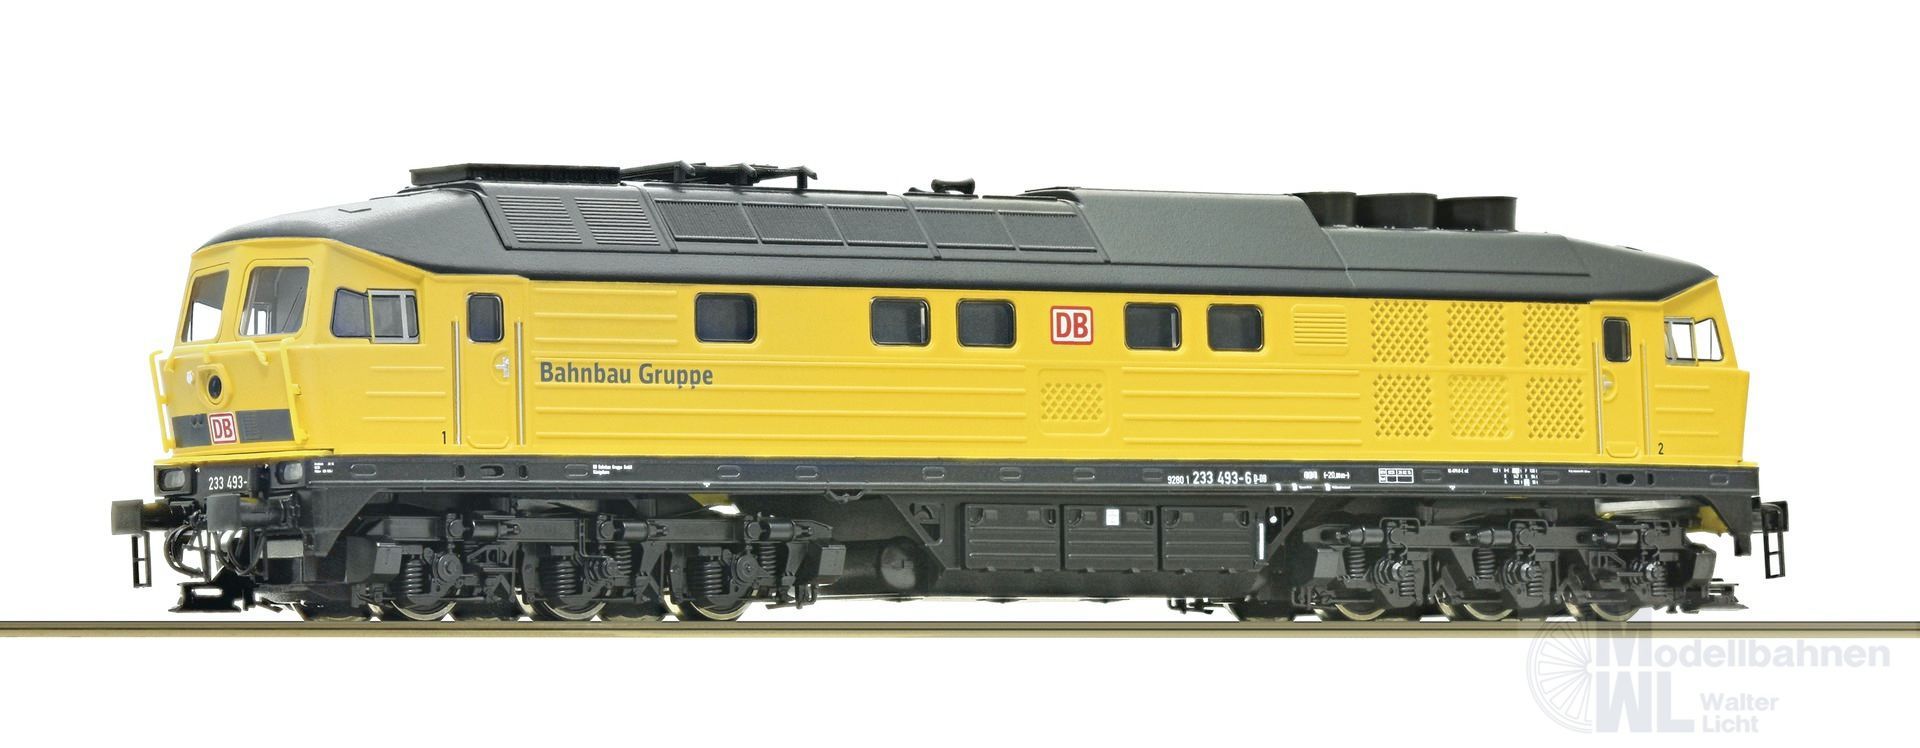 Roco 36422 - Diesellok 233 493 DB Ep.VI Bahnbau Gruppe TT 1:120